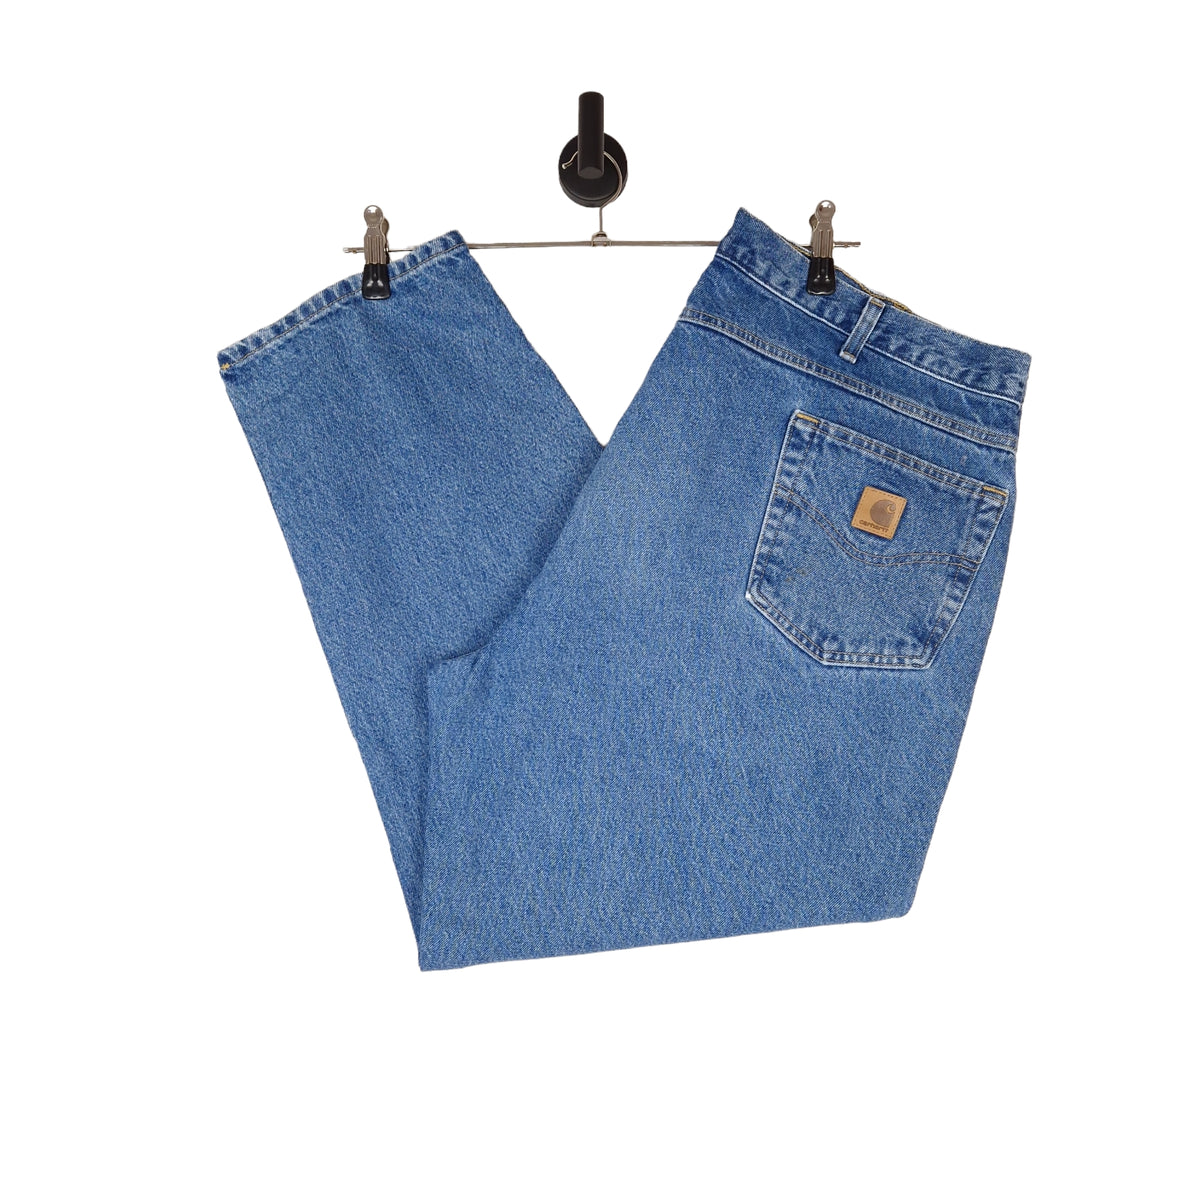 Carhartt Denim Jeans - Size W44 L30